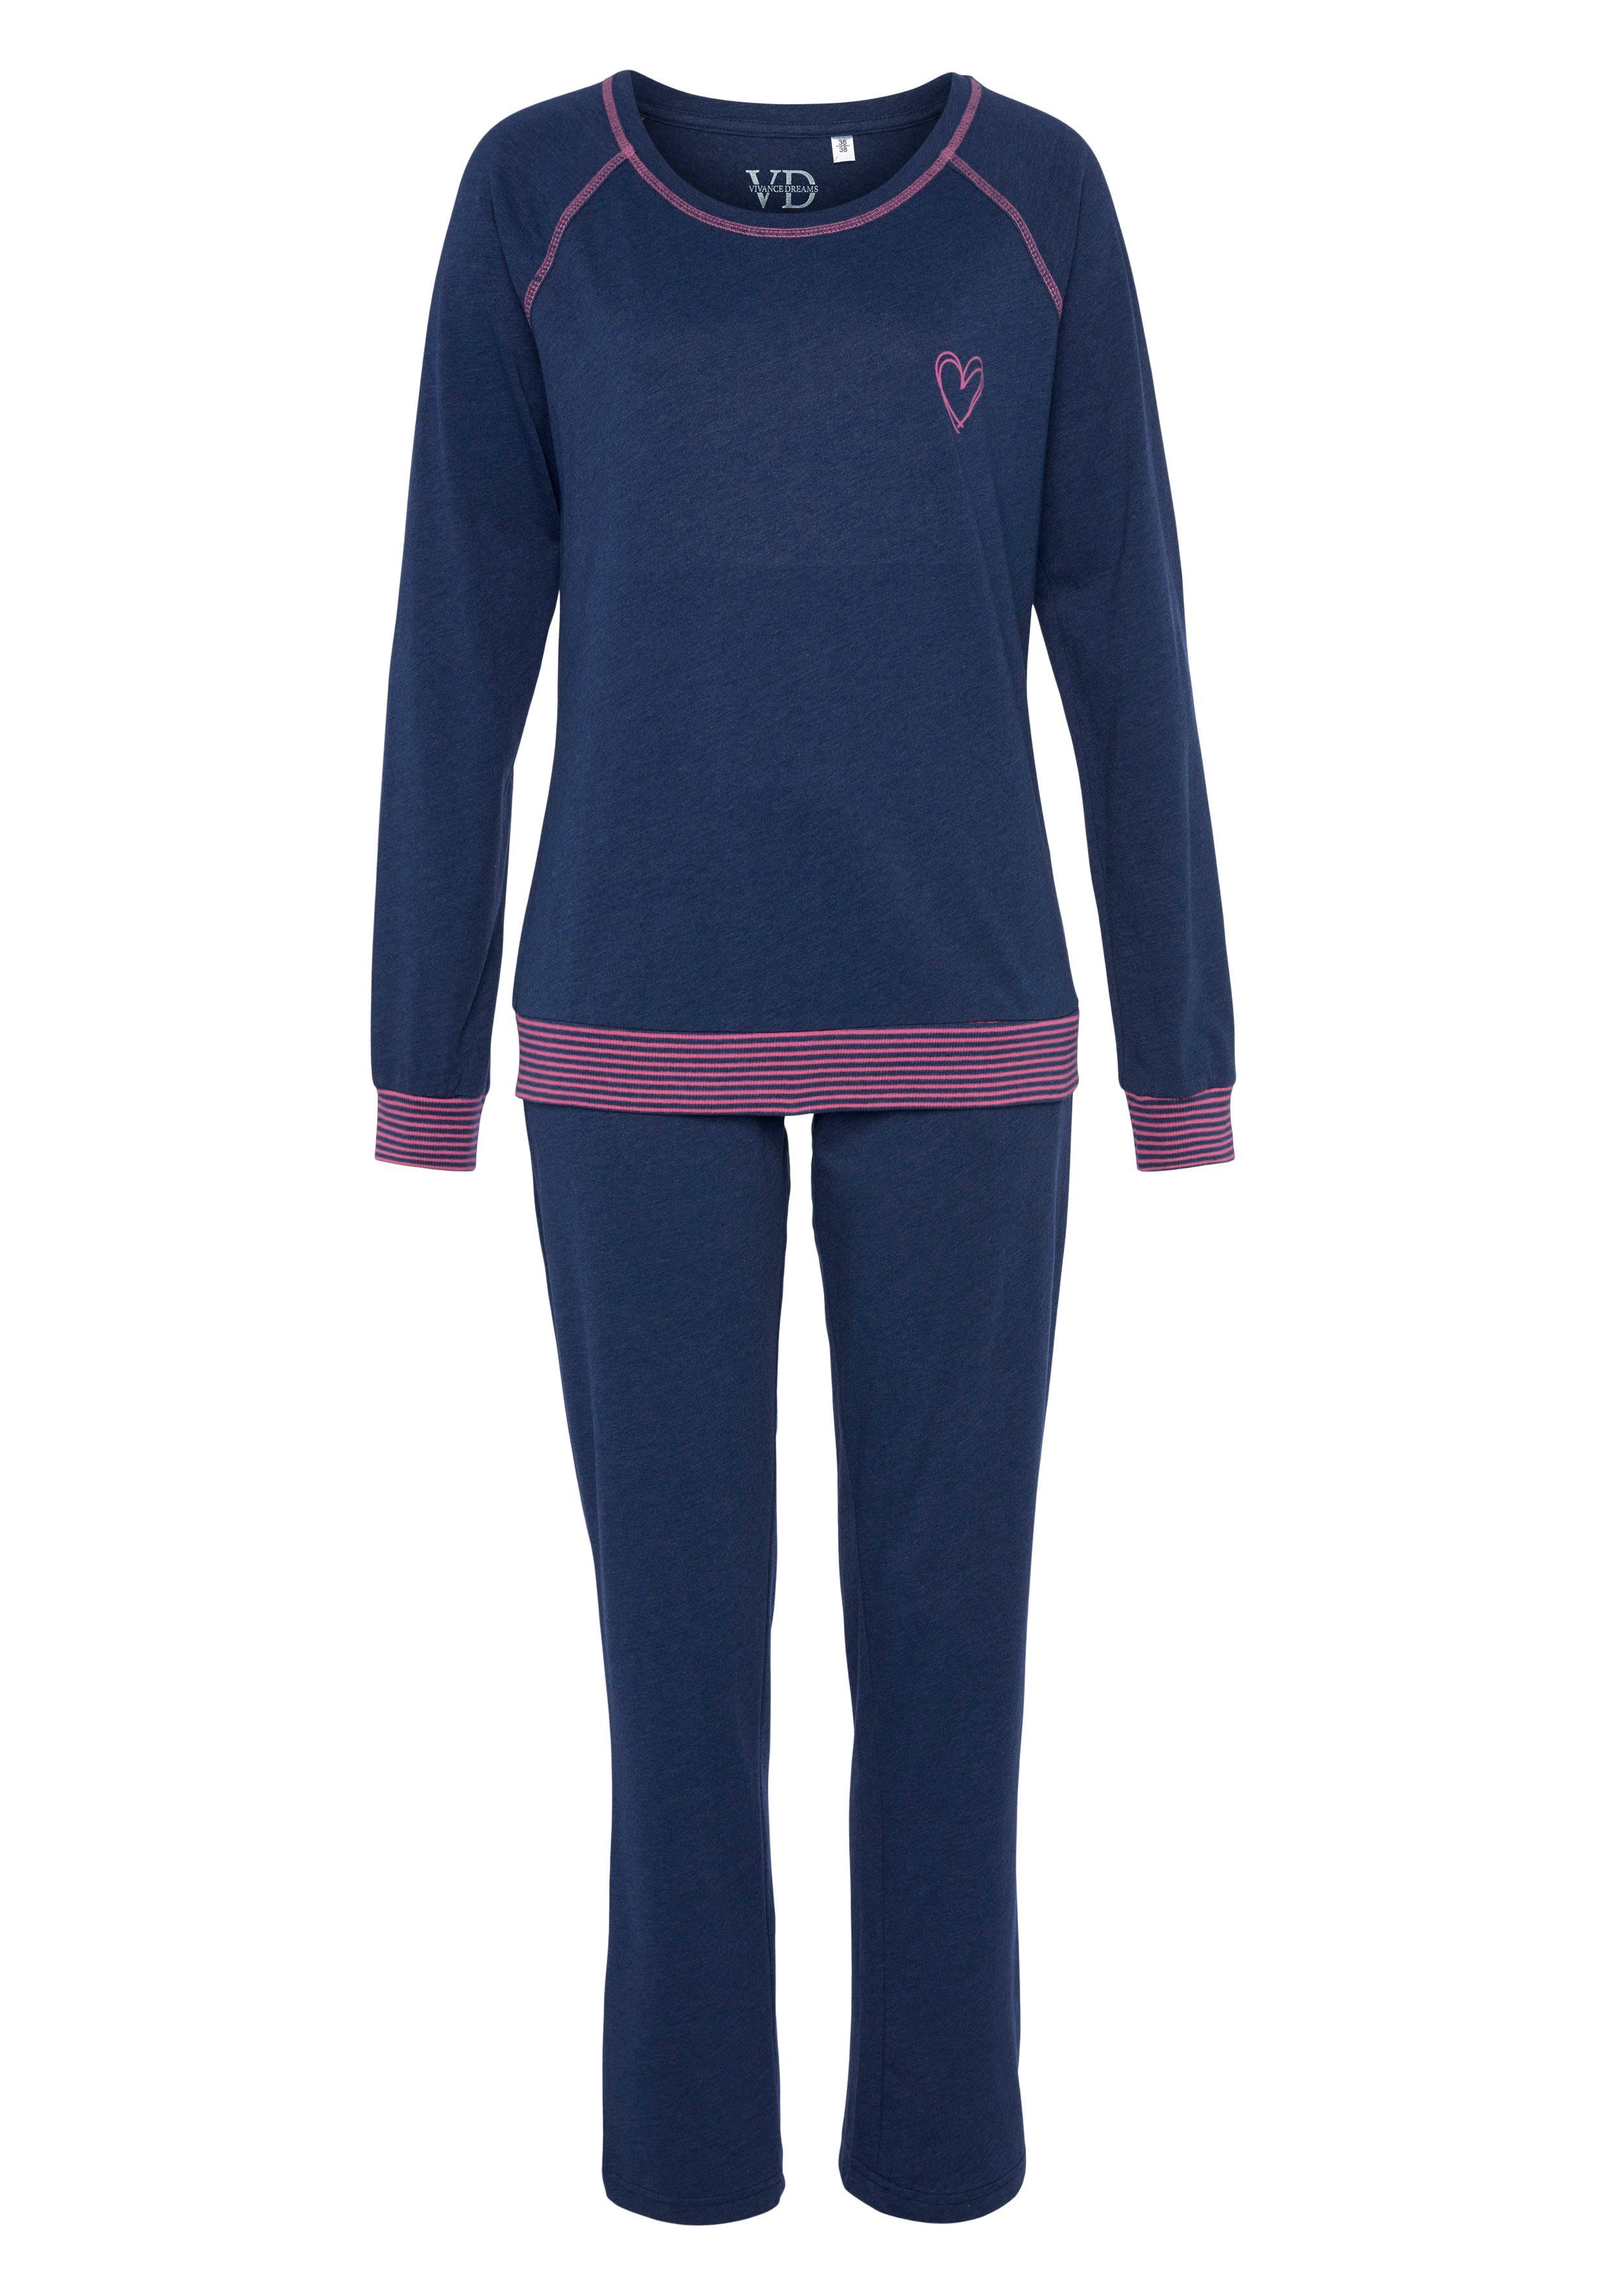 Vivance Dreams in (2 dekorativen Pyjama mit tlg) jeansblau/neon-pink Flatlock-Nähten Neonfarben